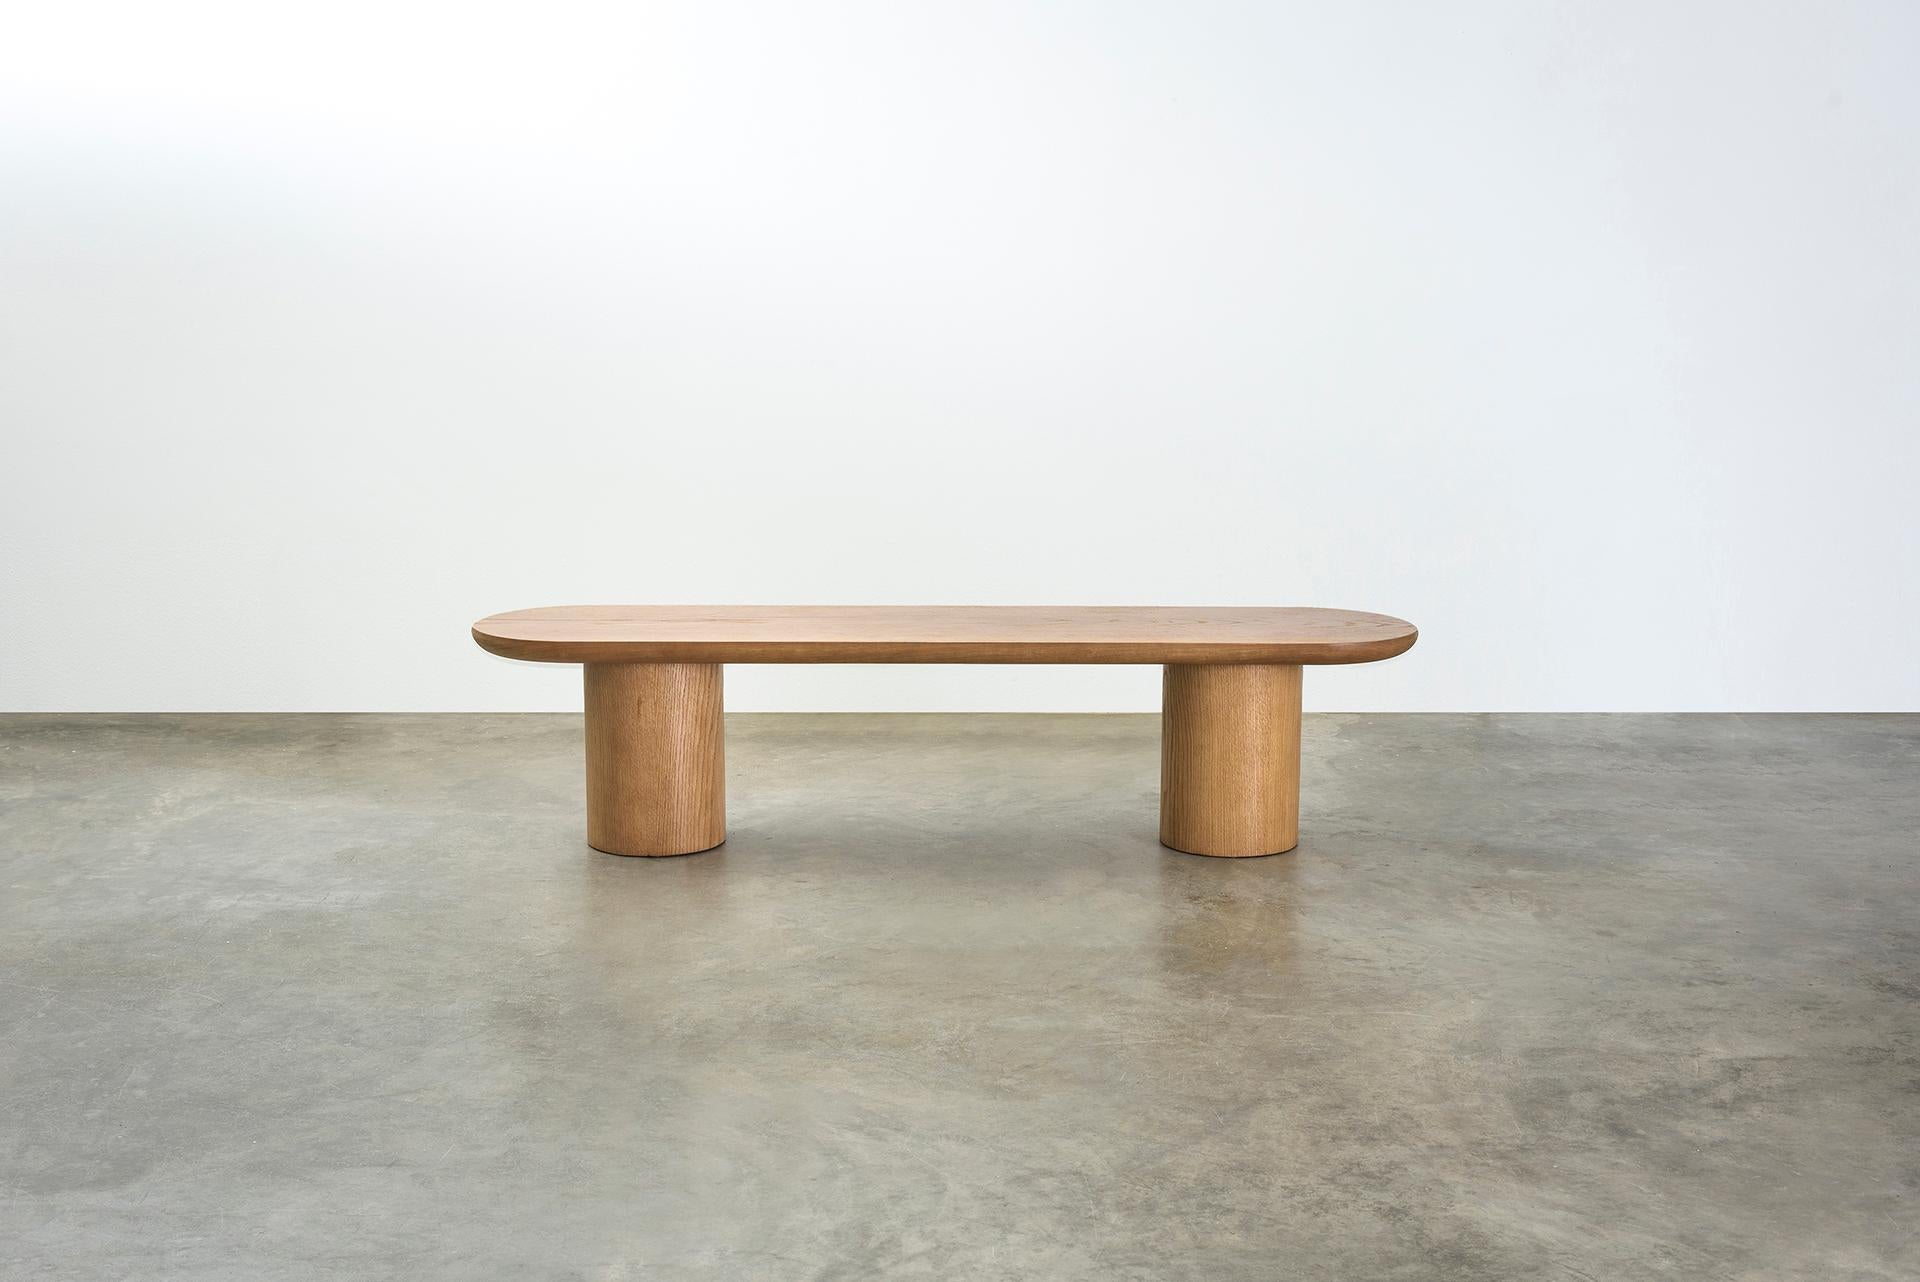 Les tables basses Porto sont composées d'un plateau circulaire qui semble reposer sur une solide base oblongue. La légèreté et le poids se chevauchent pour créer un monobloc harmonieux et non conventionnel.
Le désaccord entre la géométrie des